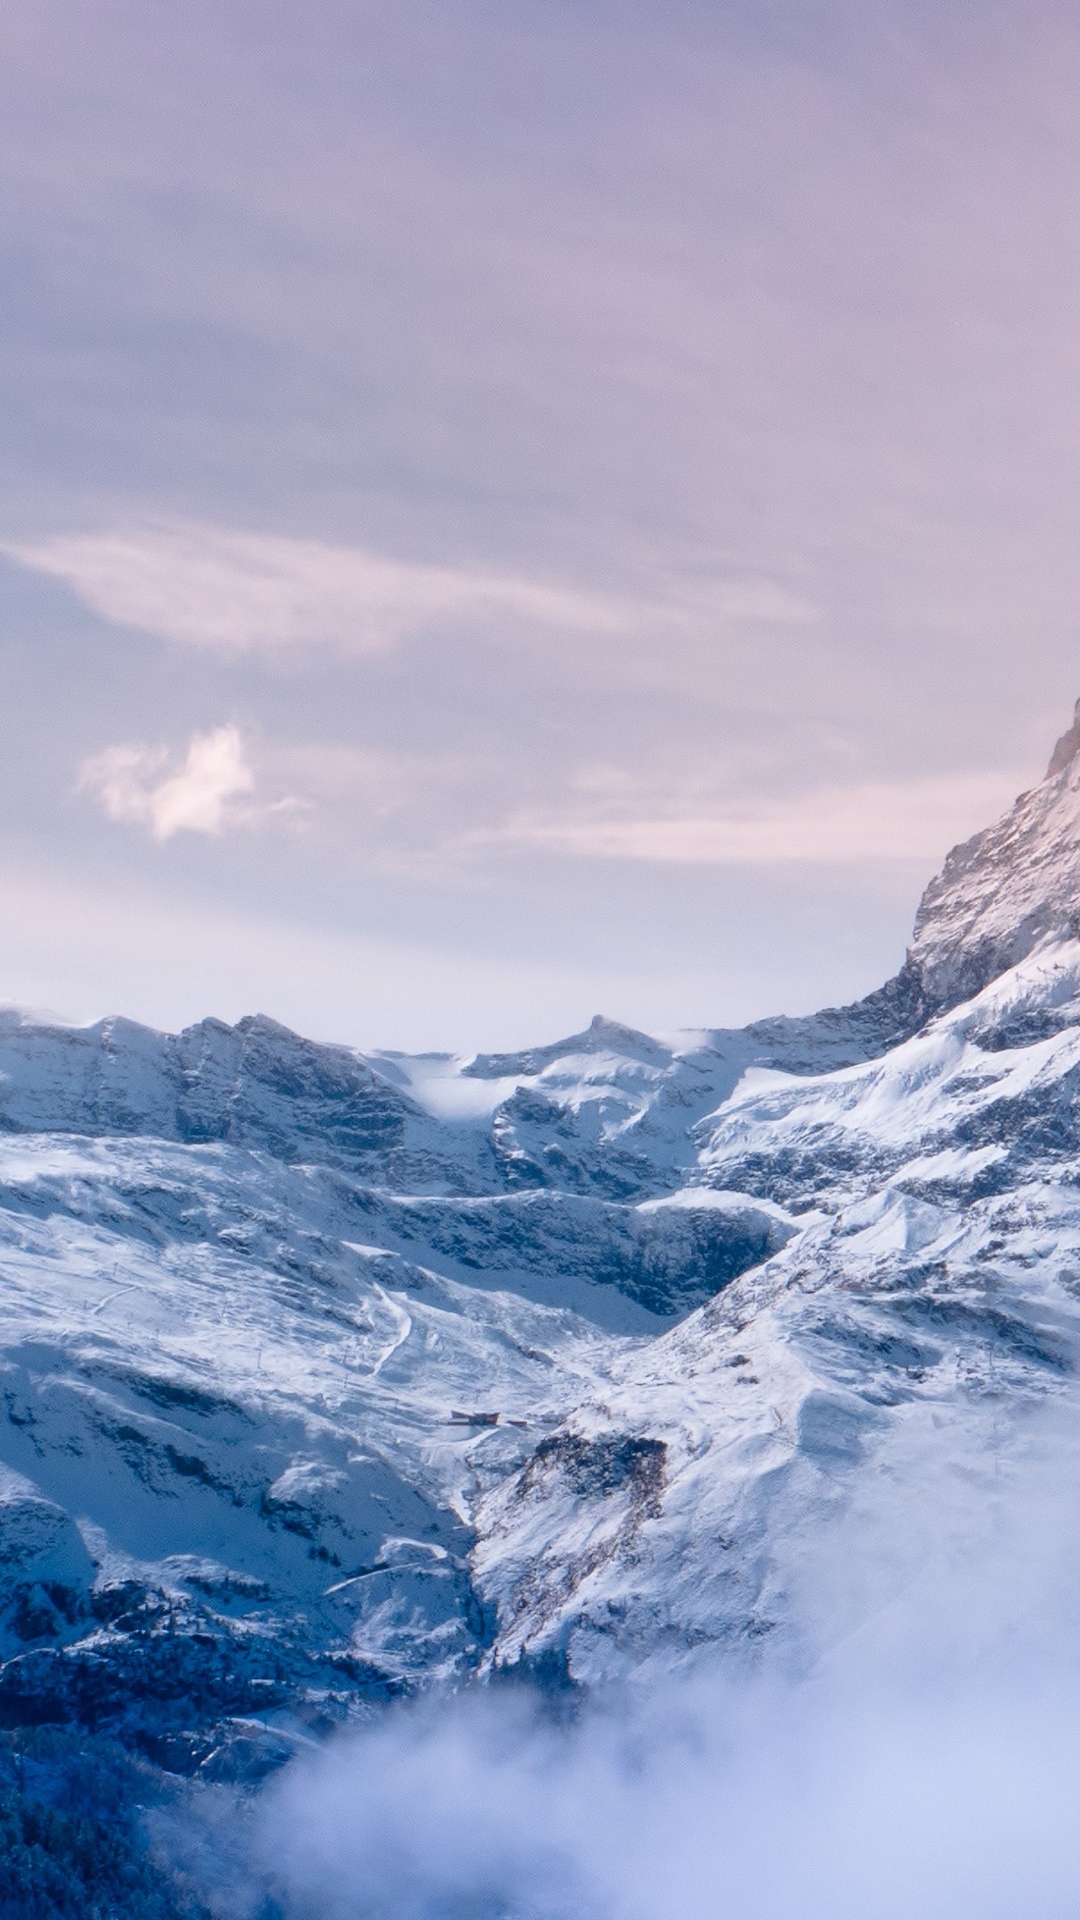 Winter Mountain 4k Ultra HD Wallpaper